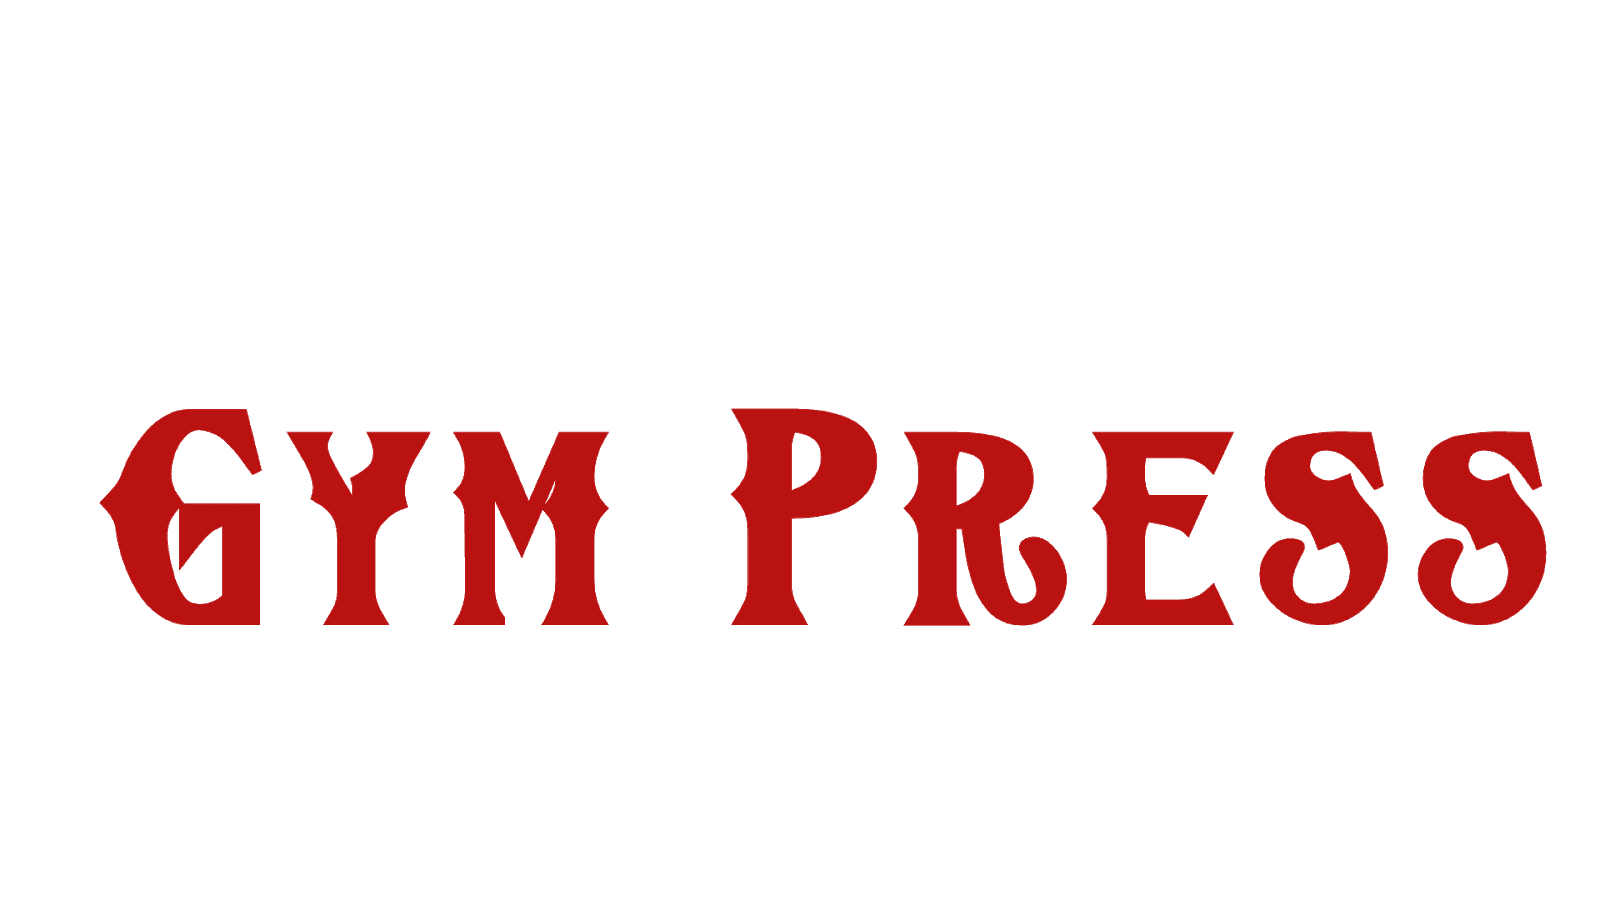 Gym Press